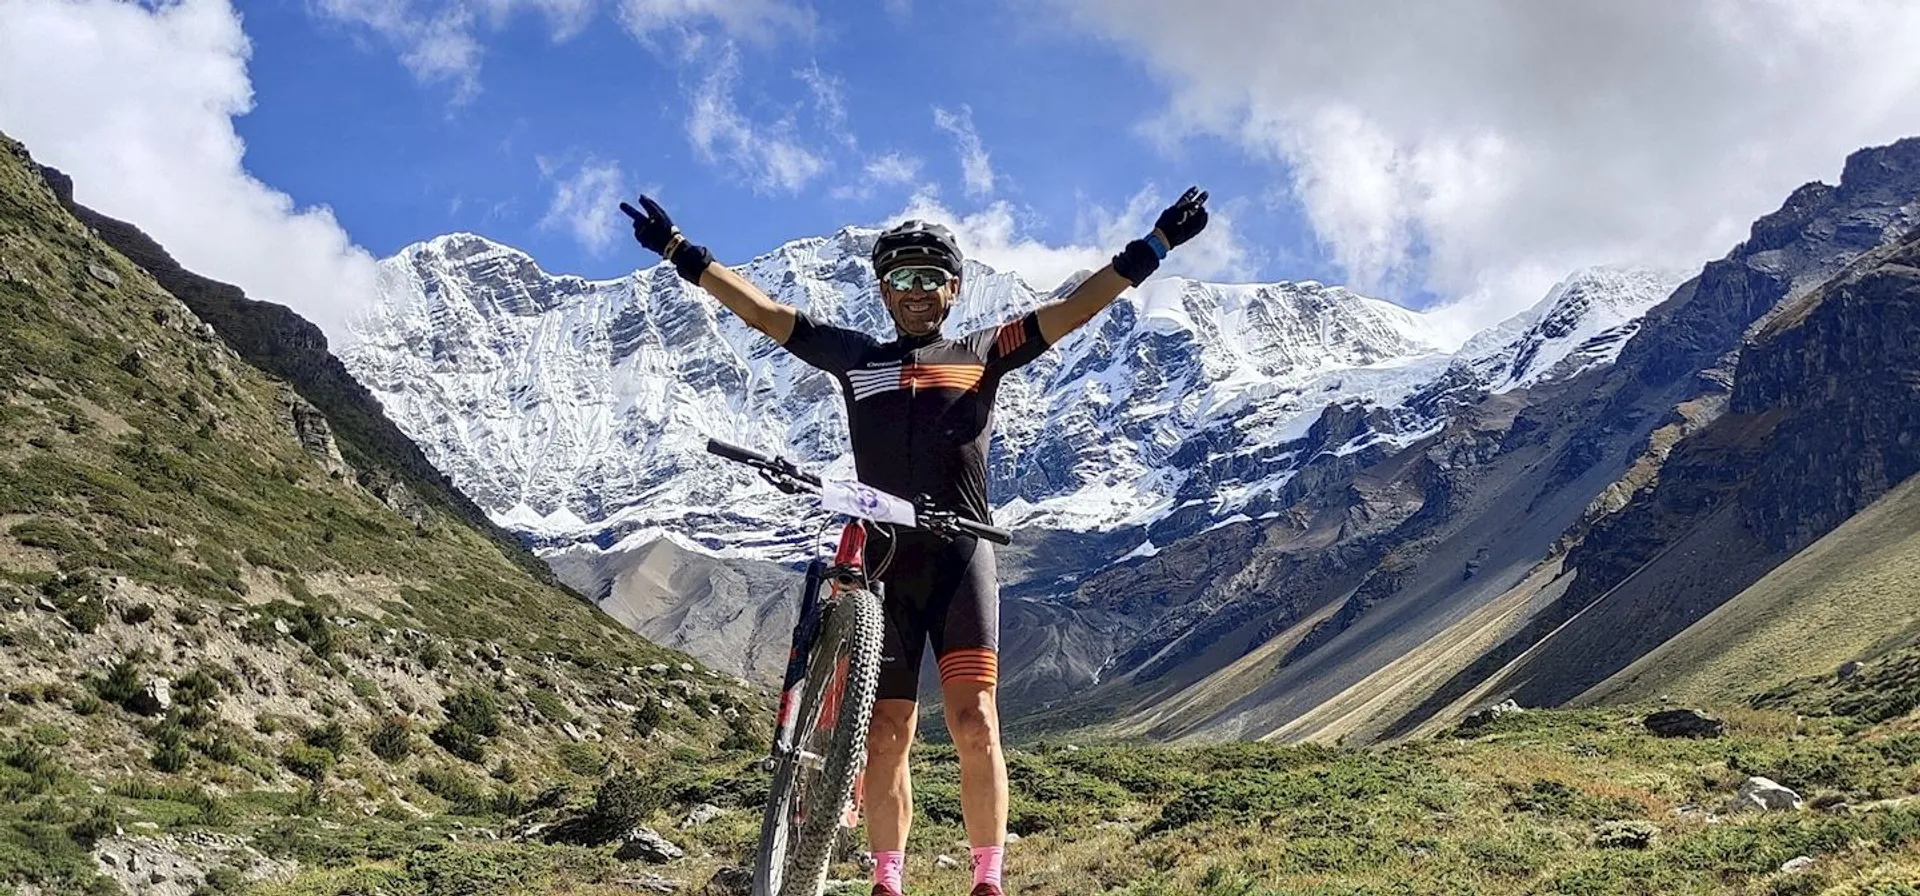 Yeti Bike Race Nepal tour of Annapurna